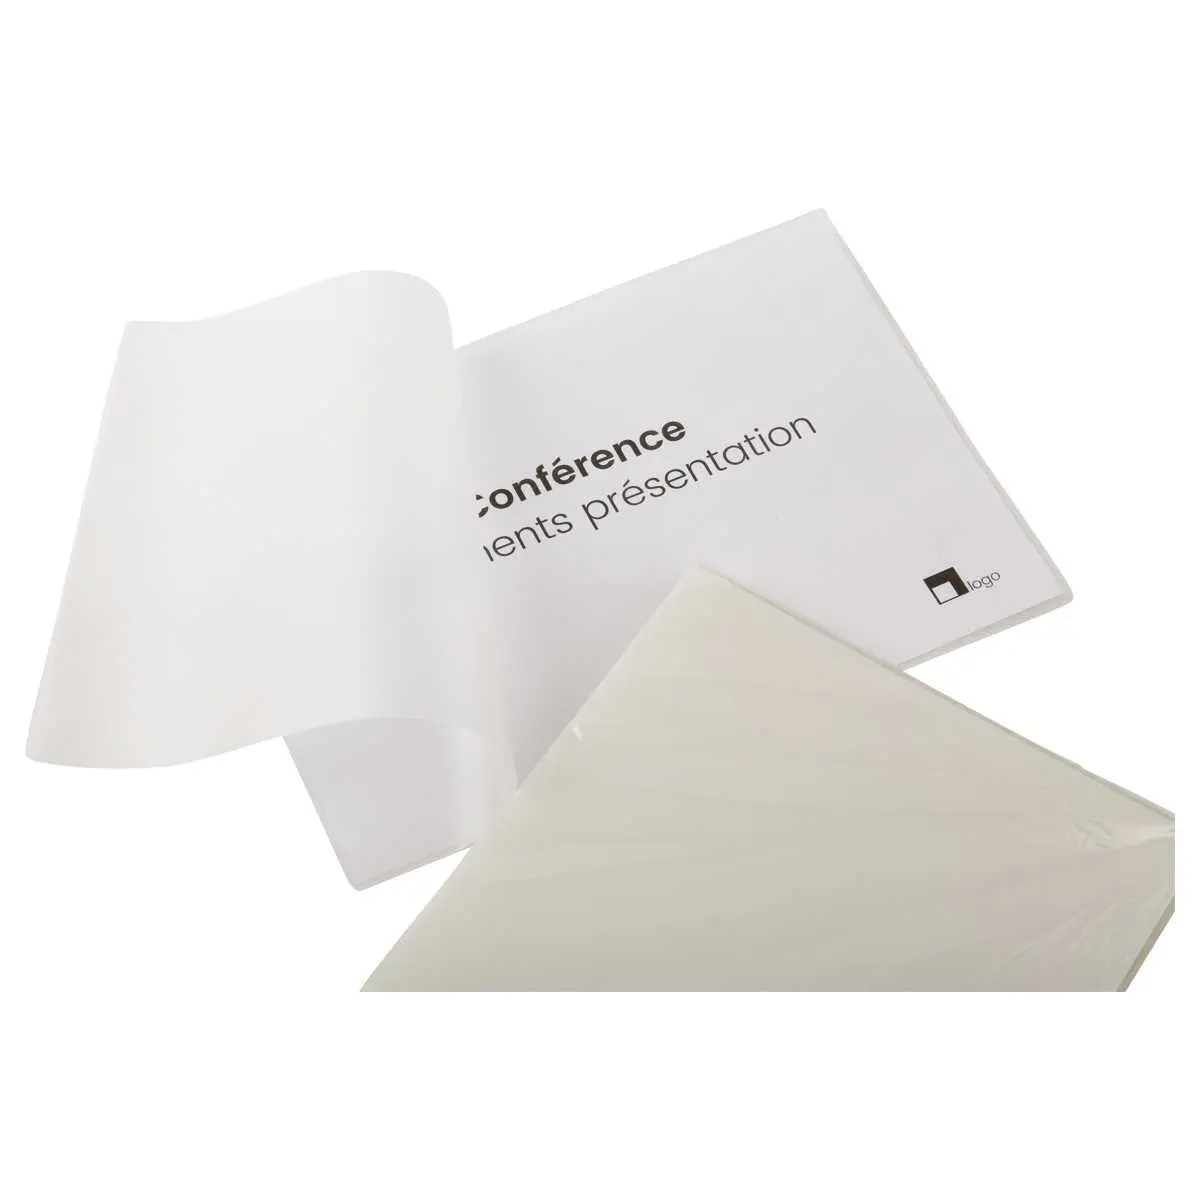 Pochettes de plastification A4 adhésives - boîte de 100 - Fiducial